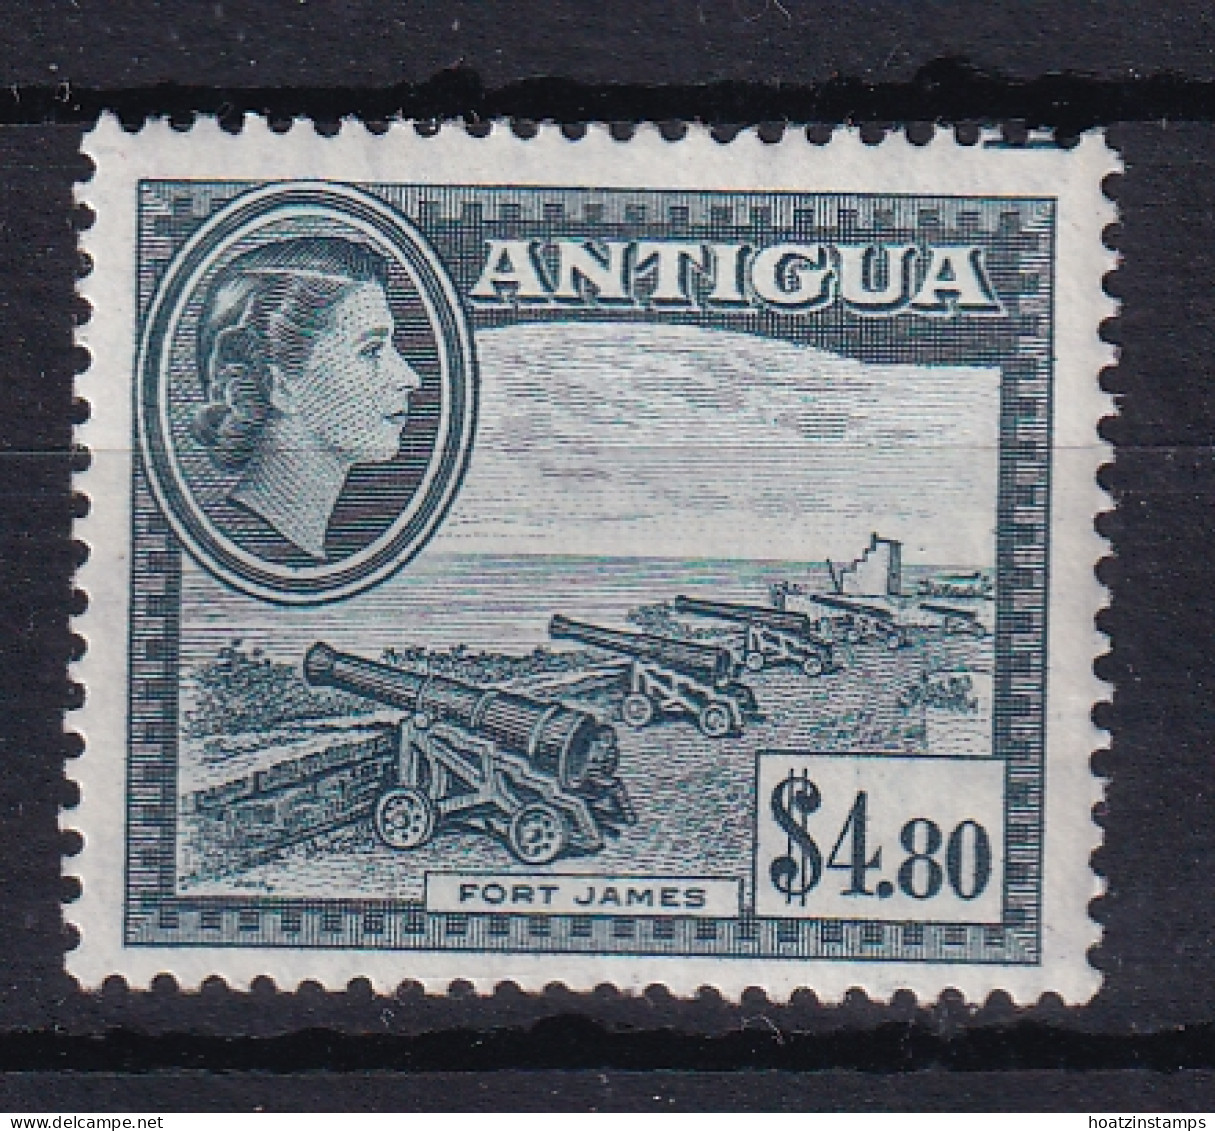 Antigua: 1953/62   QE II - Pictorial     SG134    $4.80      MH - 1858-1960 Colonia Britannica